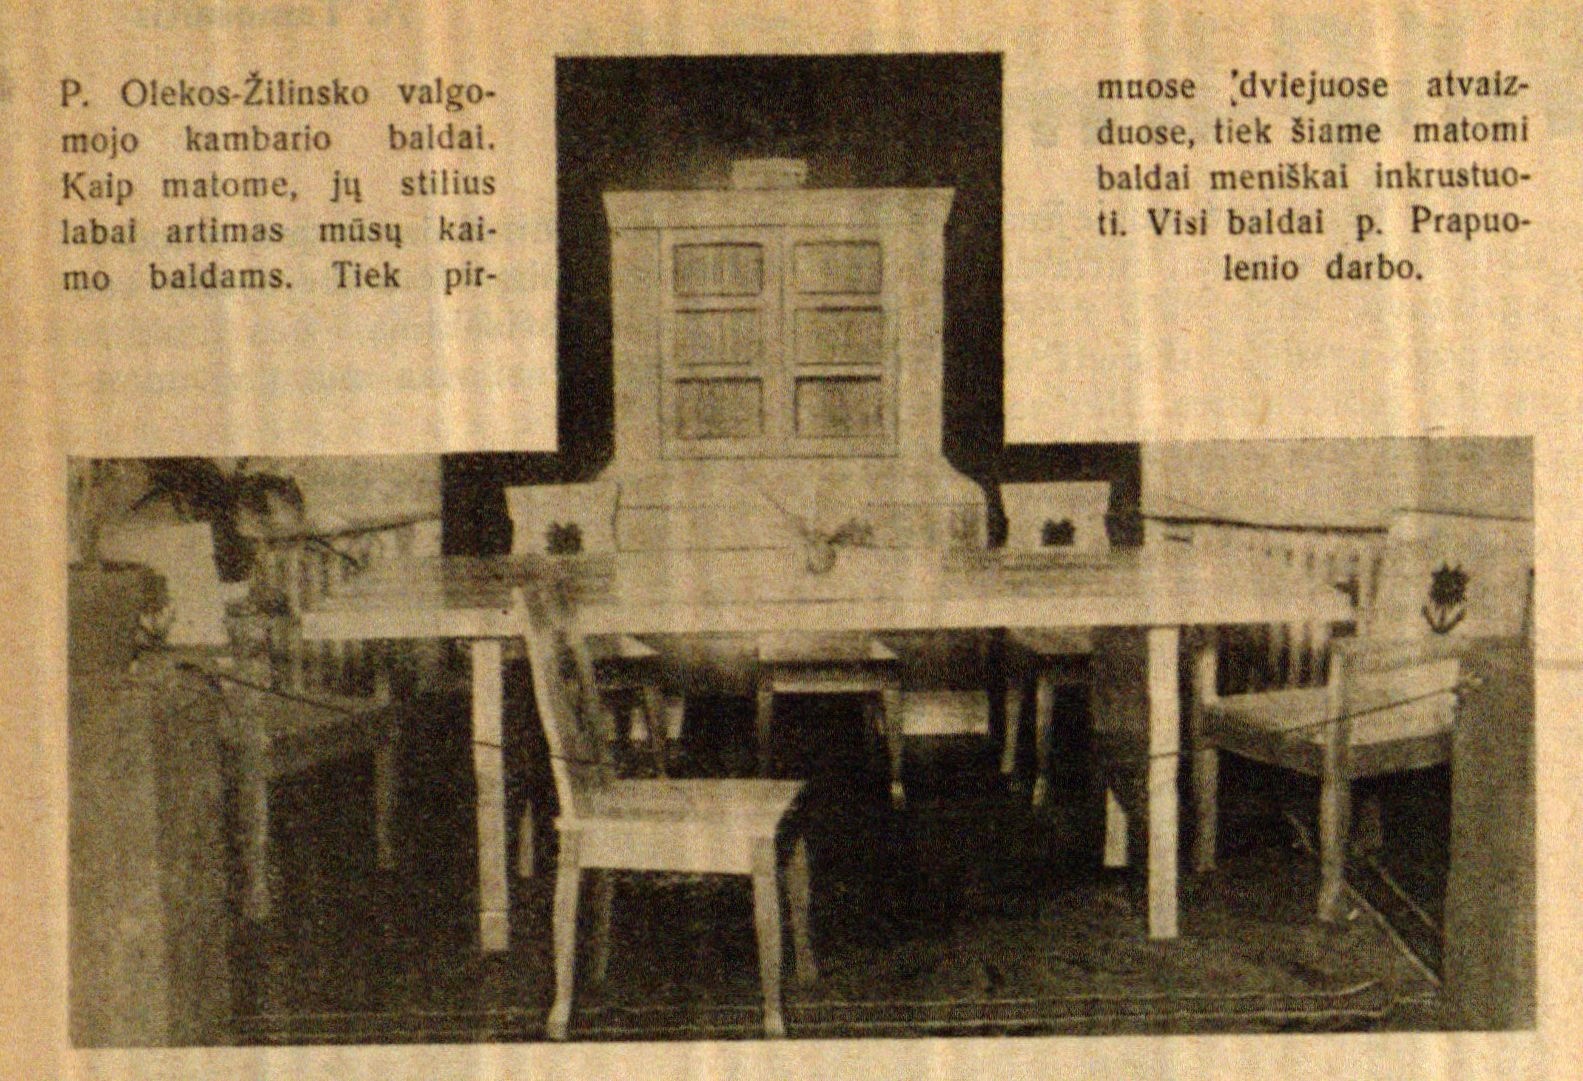 P. Olekos-Žilinsko valgomojo kambario baldai. Visi baldai p. Prapuolenio darbo // Bangos. – 1932, Nr. 12, p. 368.